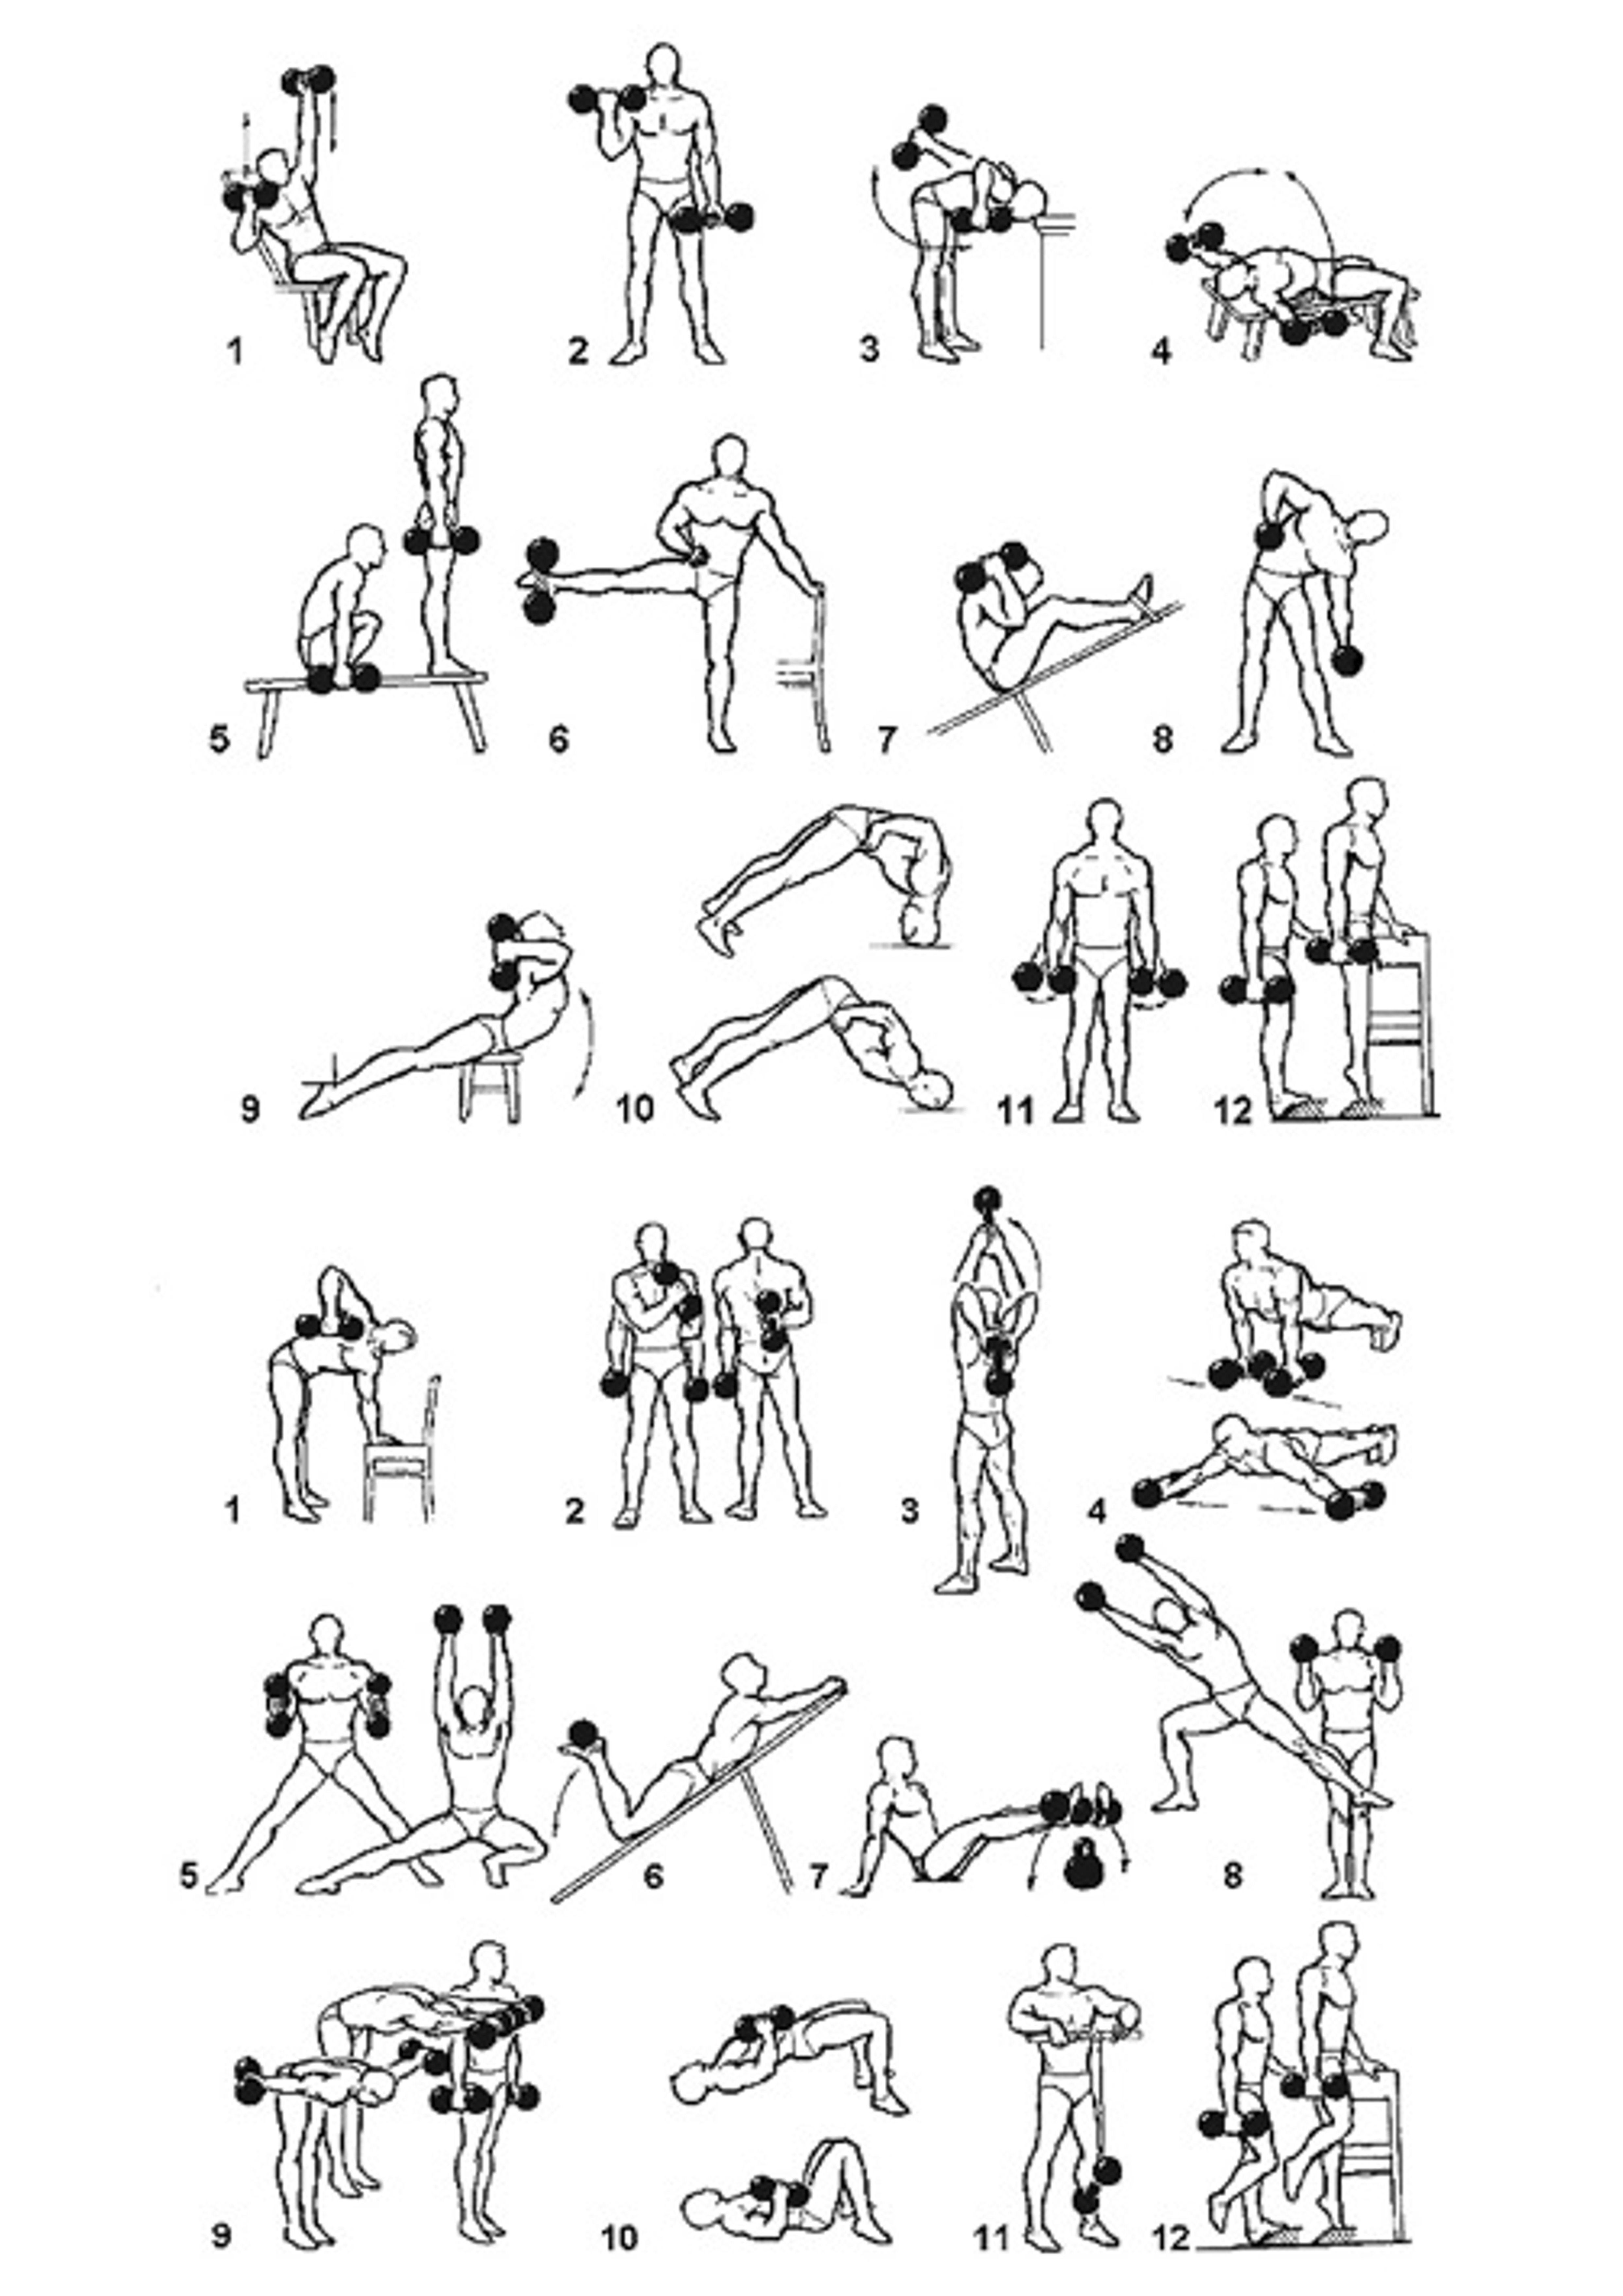 Комплексы упражнений со штангой или грифом для мужчин и женщин в домашних условиях | rulebody.ru — правила тела